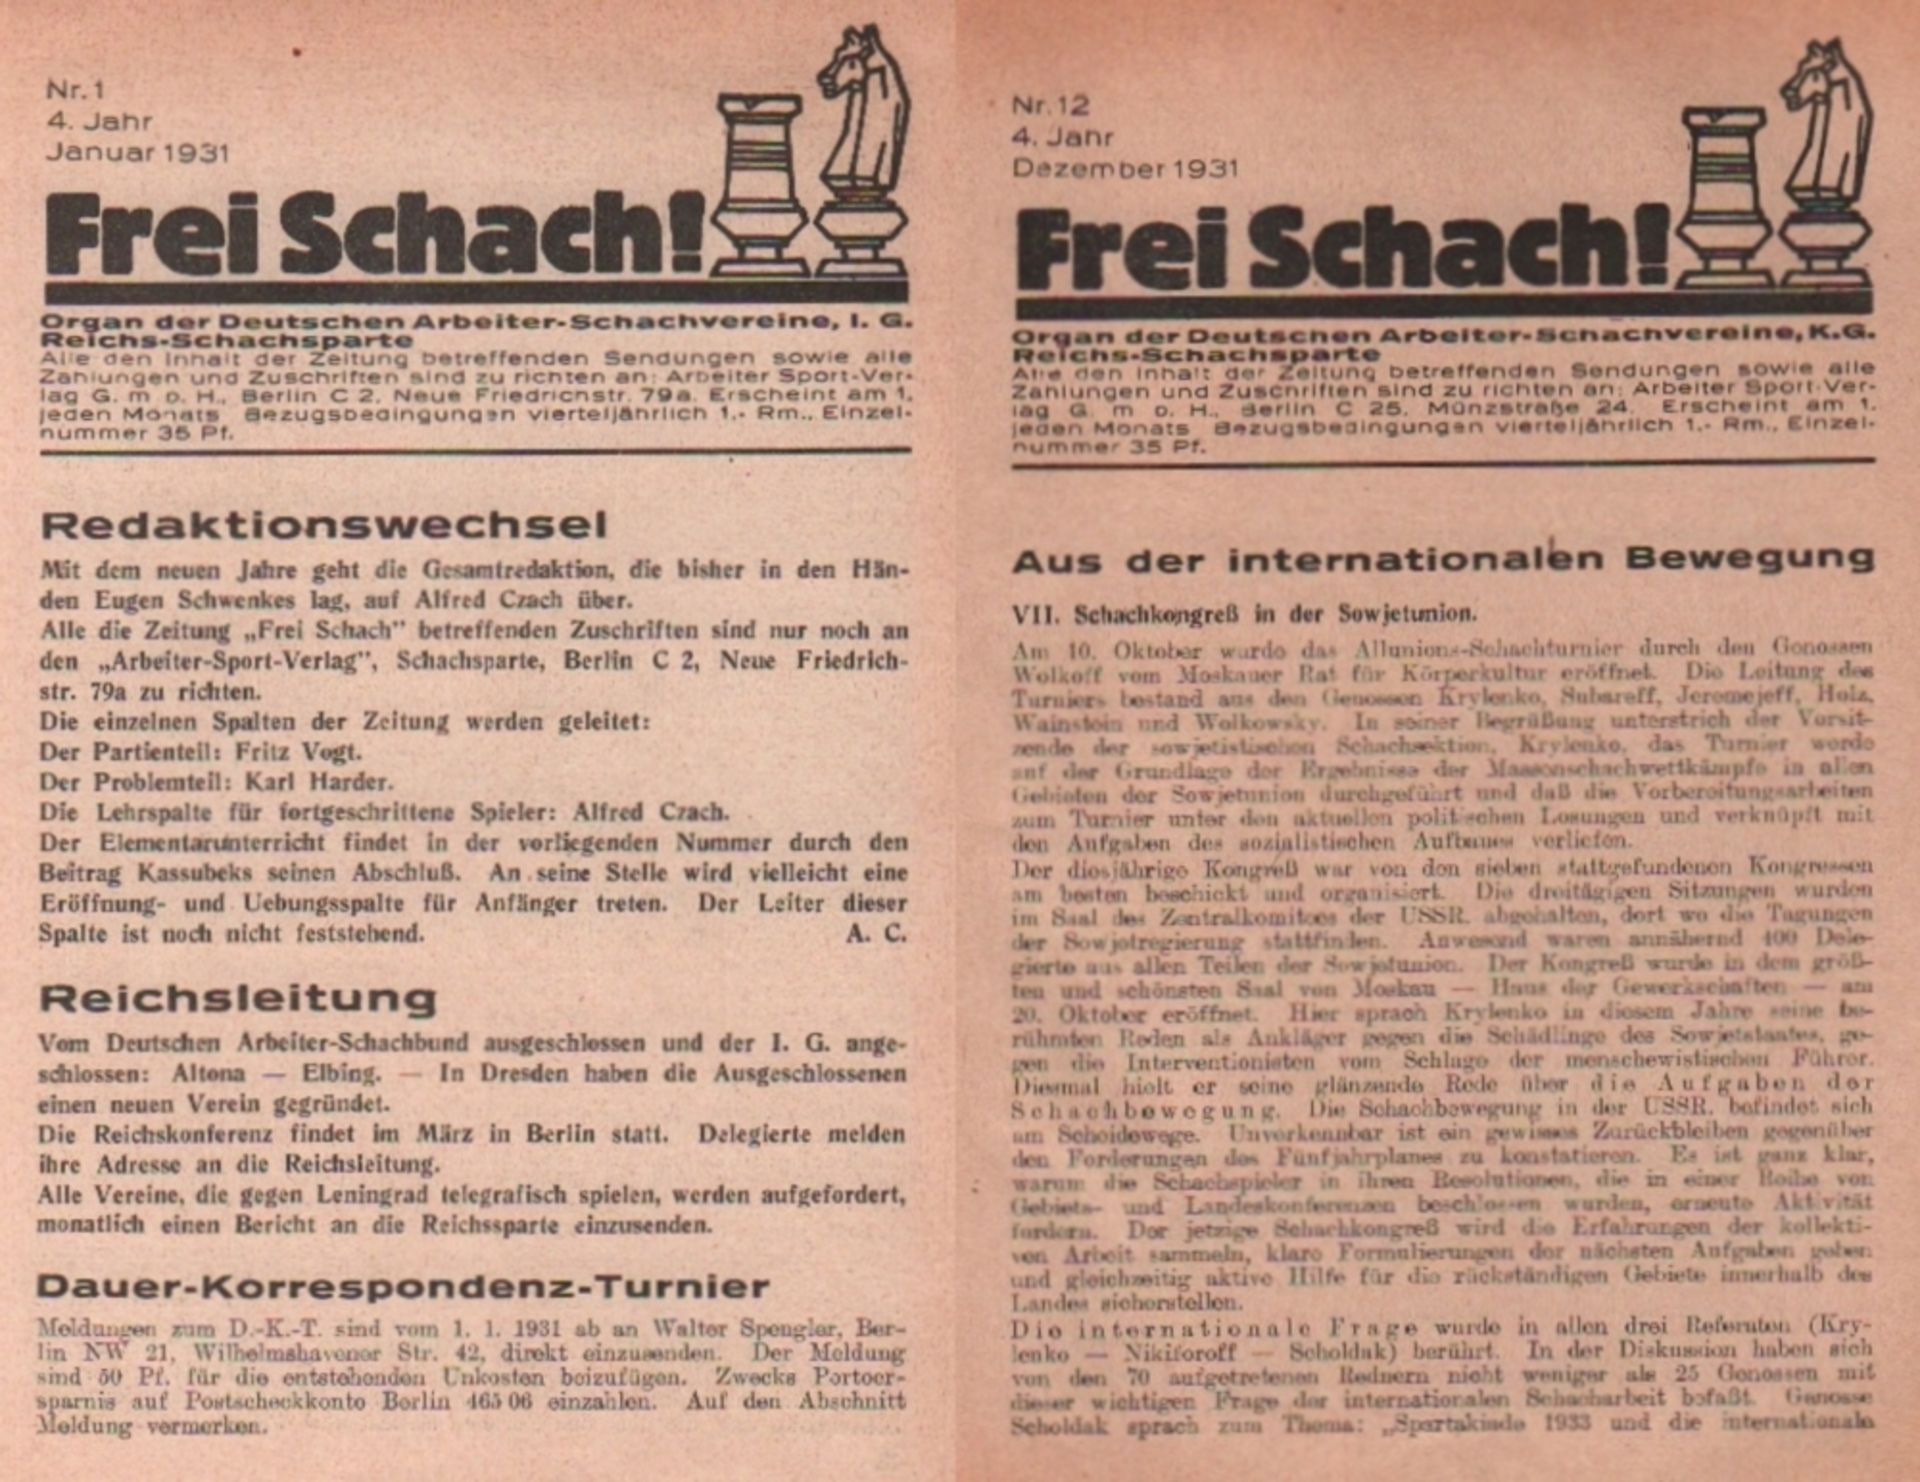 Frei Schach! Organ der Deutschen Arbeiter – Schachvereine, I. G. Reichs - Schachsparte. Redaktion: